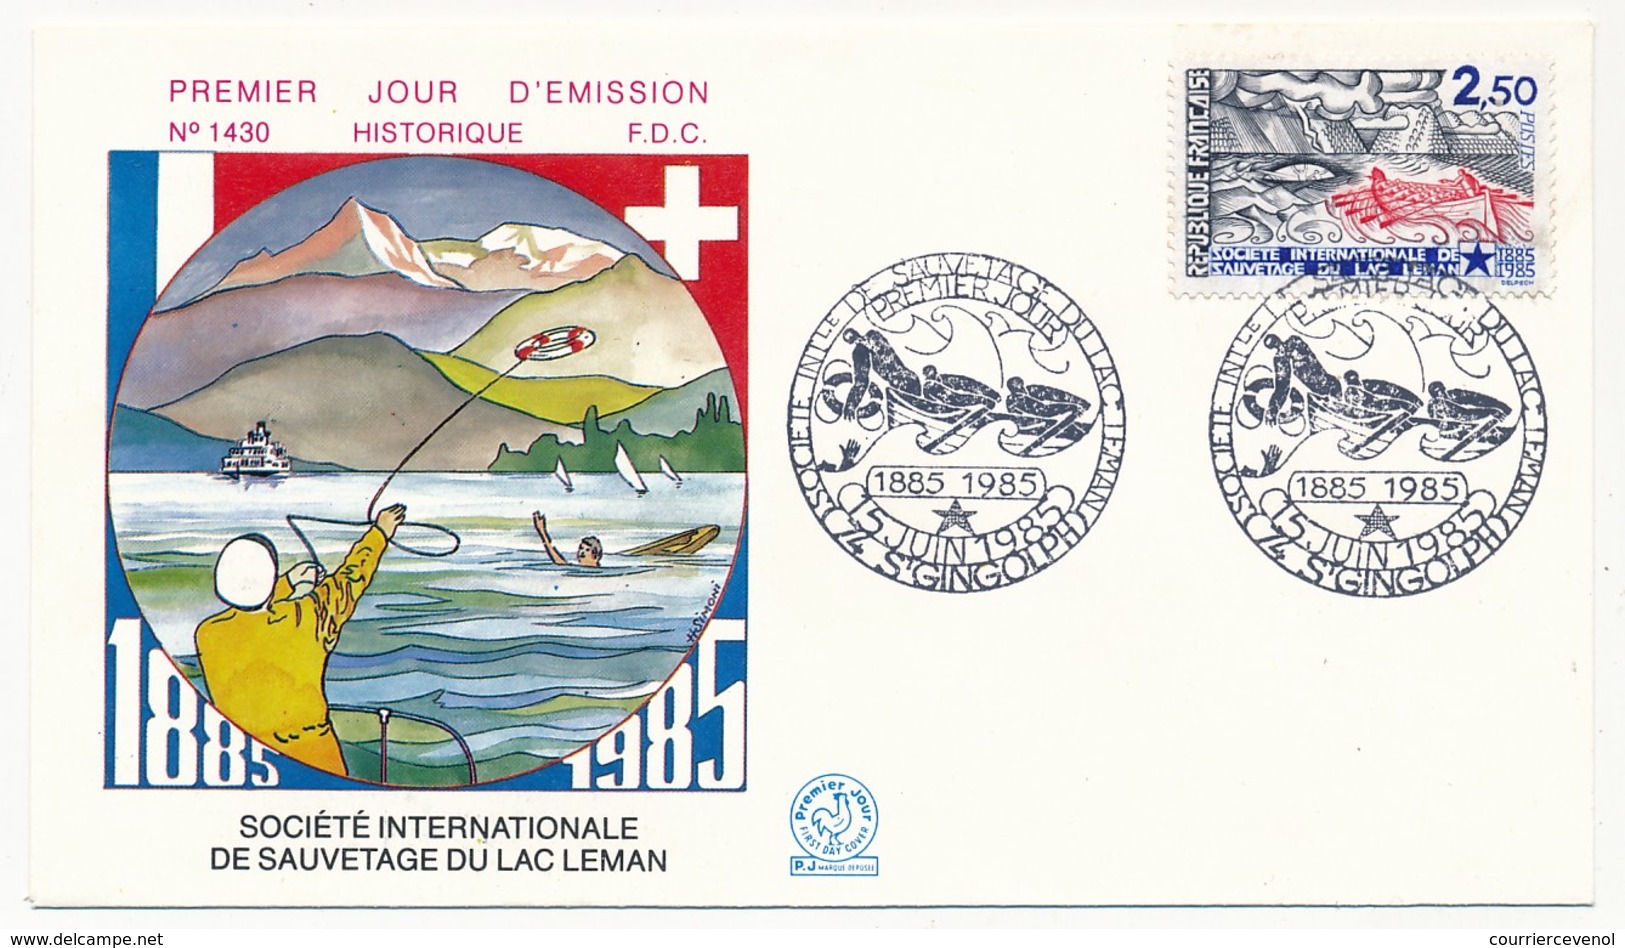 2 Enveloppes FDC Emission Commune France/Suisse - Société De Sauvetage Du Léman - 1985 - Joint Issues